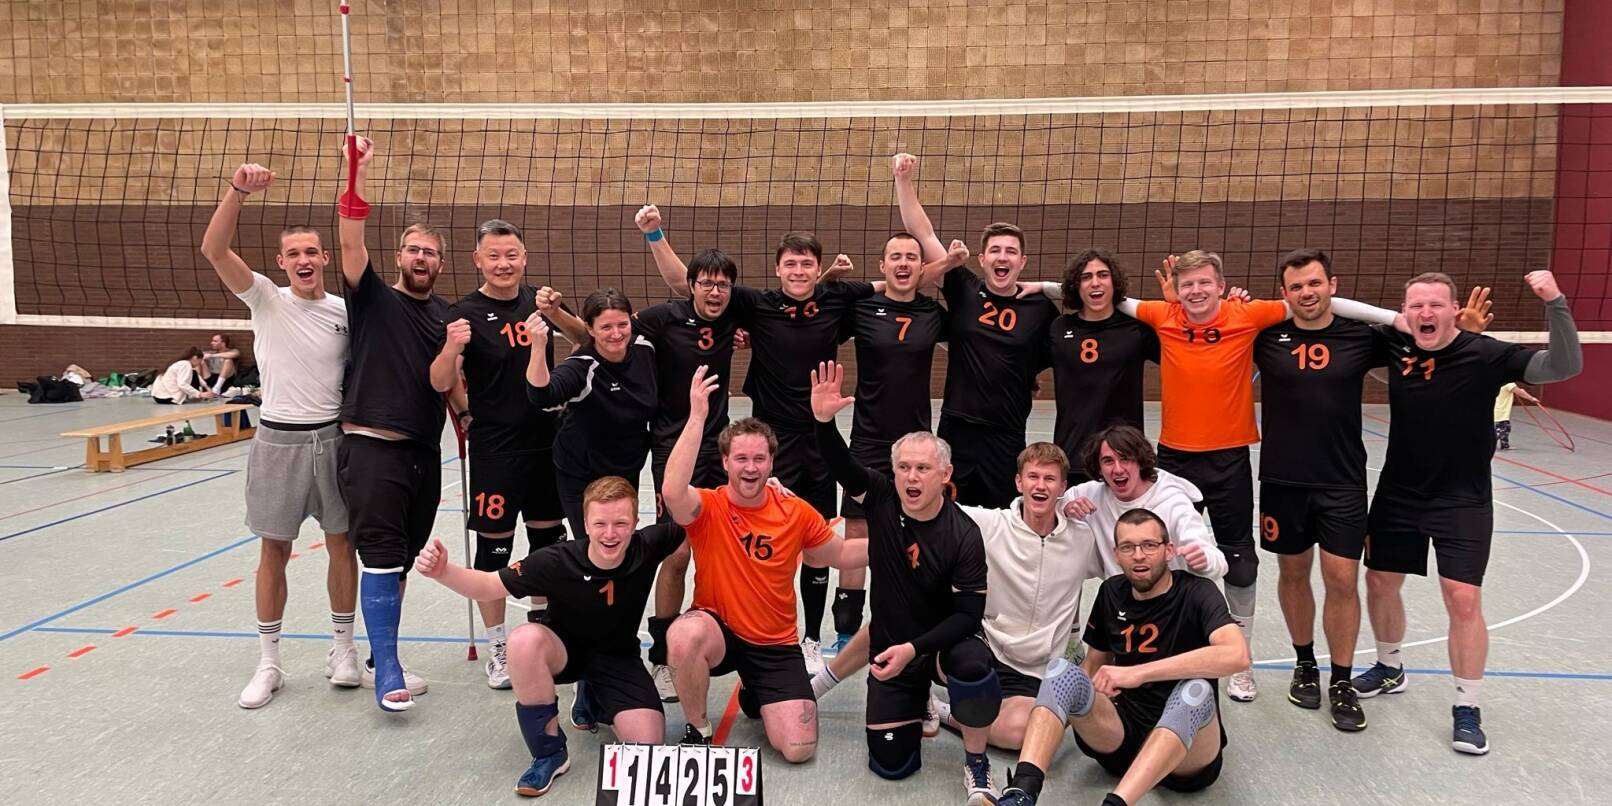 Nach 2013 und 2019 sind die Volleyballer der TG Laudenbach zum dritten Mal in die Bezirksliga aufgestiegen. Im letzten Saisonspiel bezwang das Team um Trainerin Kathrin Trübenbach die zweitplatzierte SG Ketsch-Brühl mit 3:1.